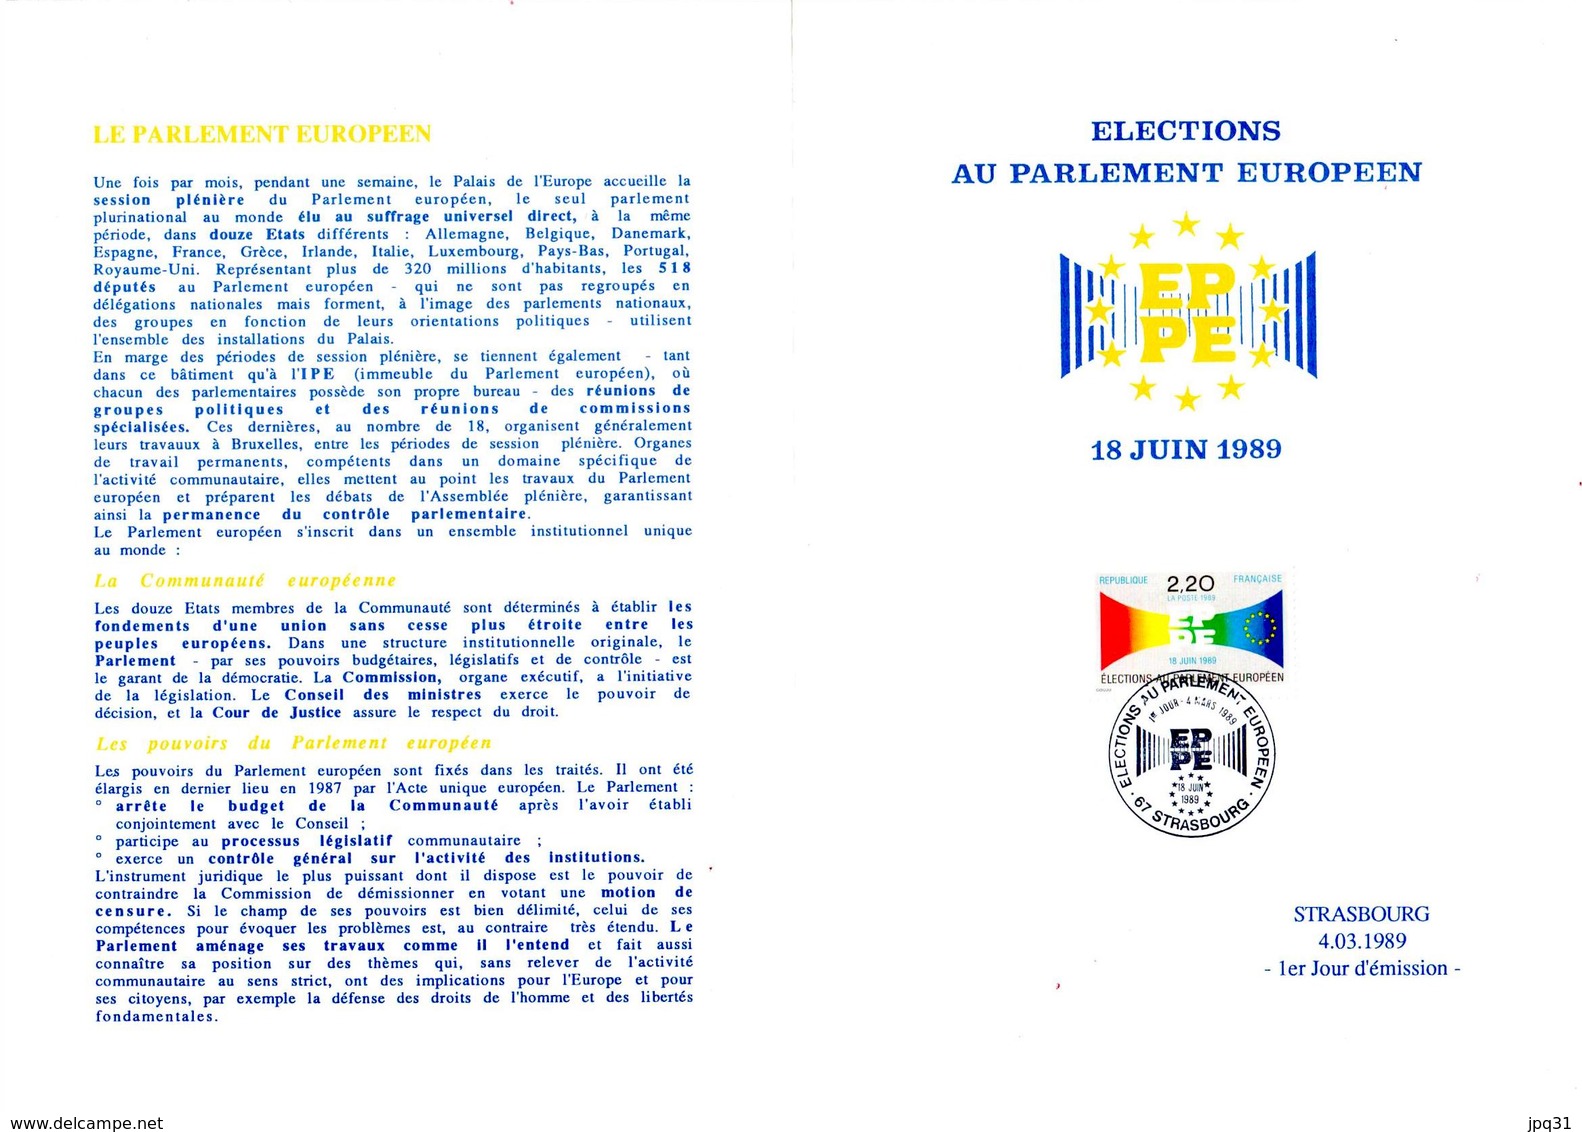 Encart 1er Jour Timbre Elections Au Parlement Européen - Strasbourg 4/03/89 - Institutions Européennes